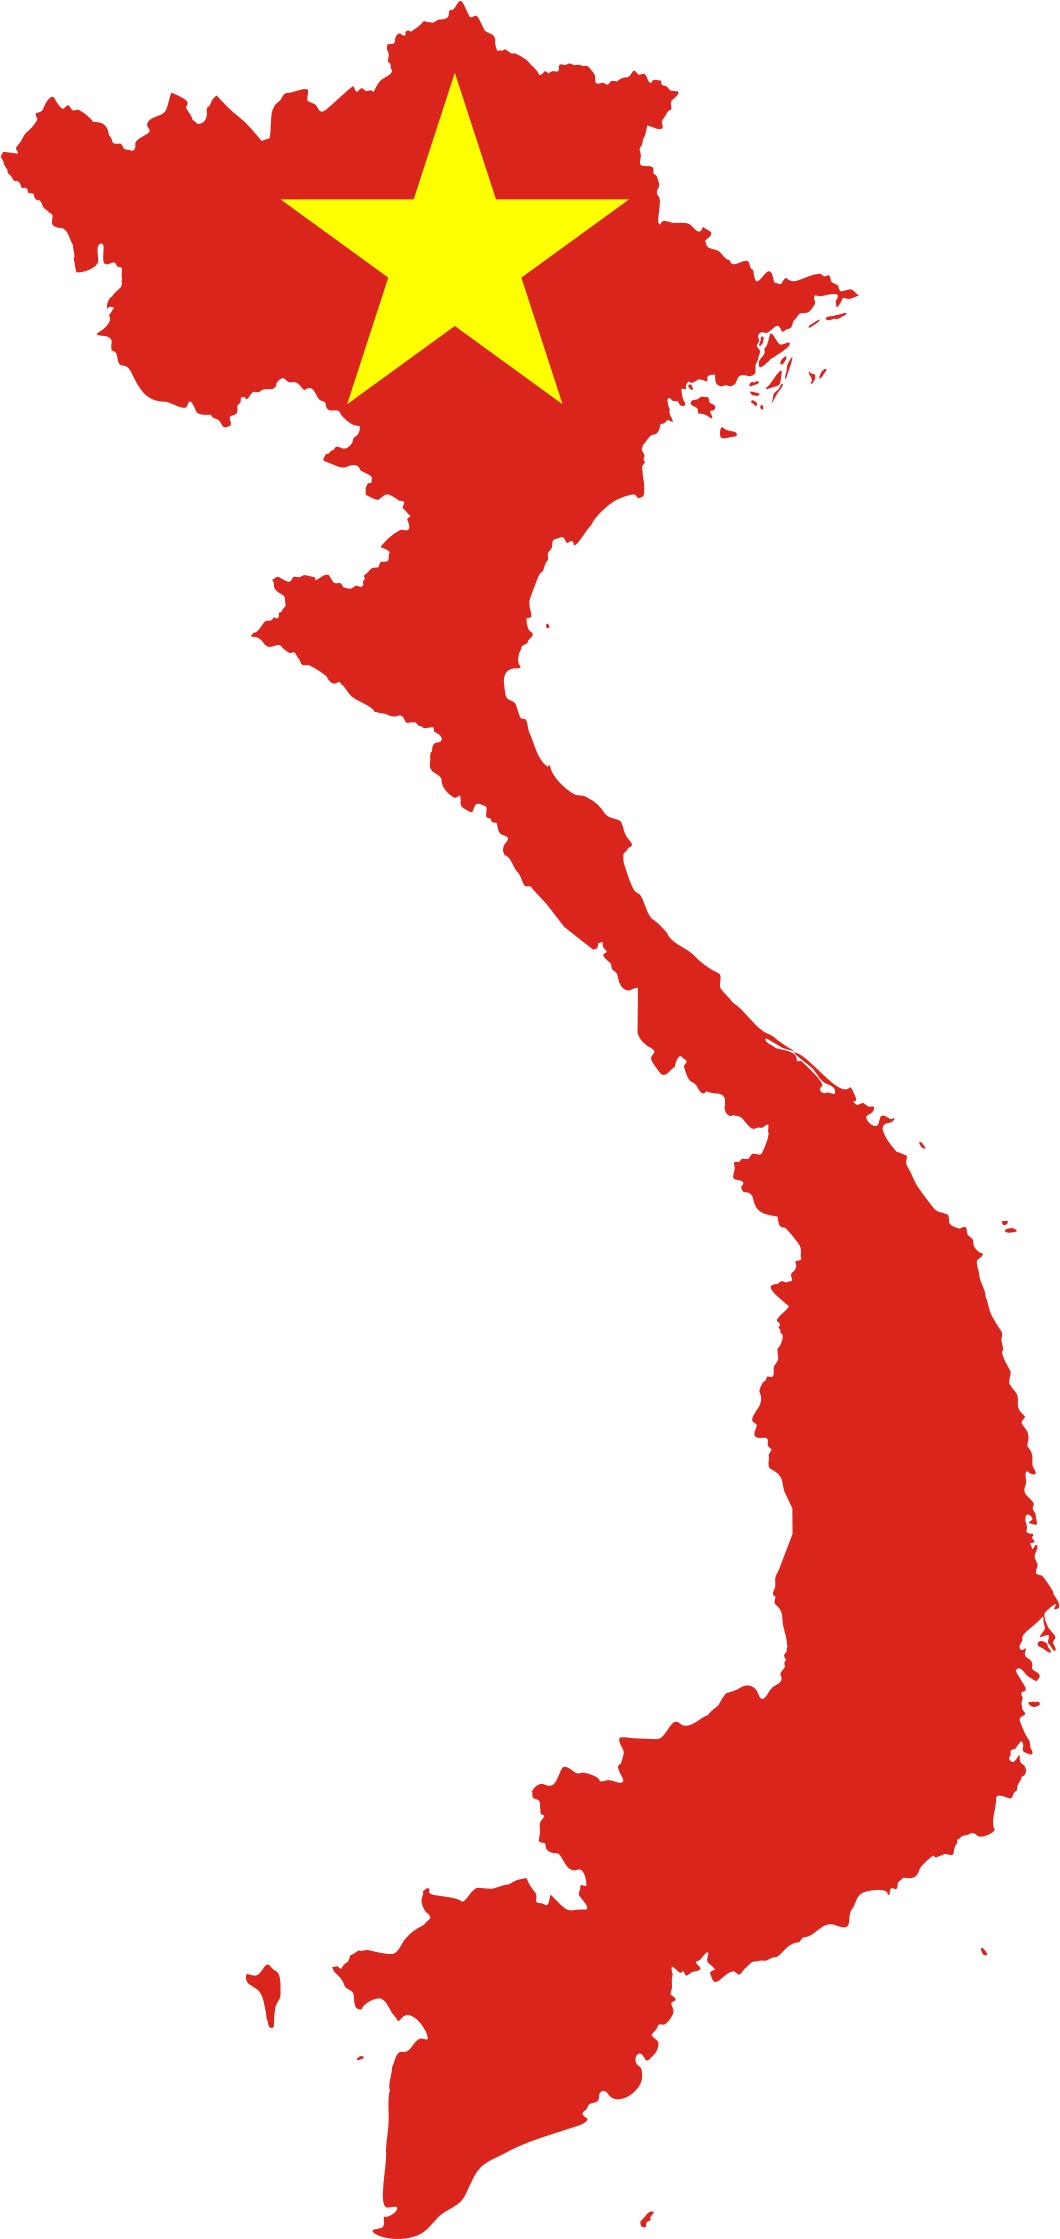 Hình Ảnh Cờ Đỏ Sao Vàng - Niềm Tự Hào Dân Tộc Việt Nam